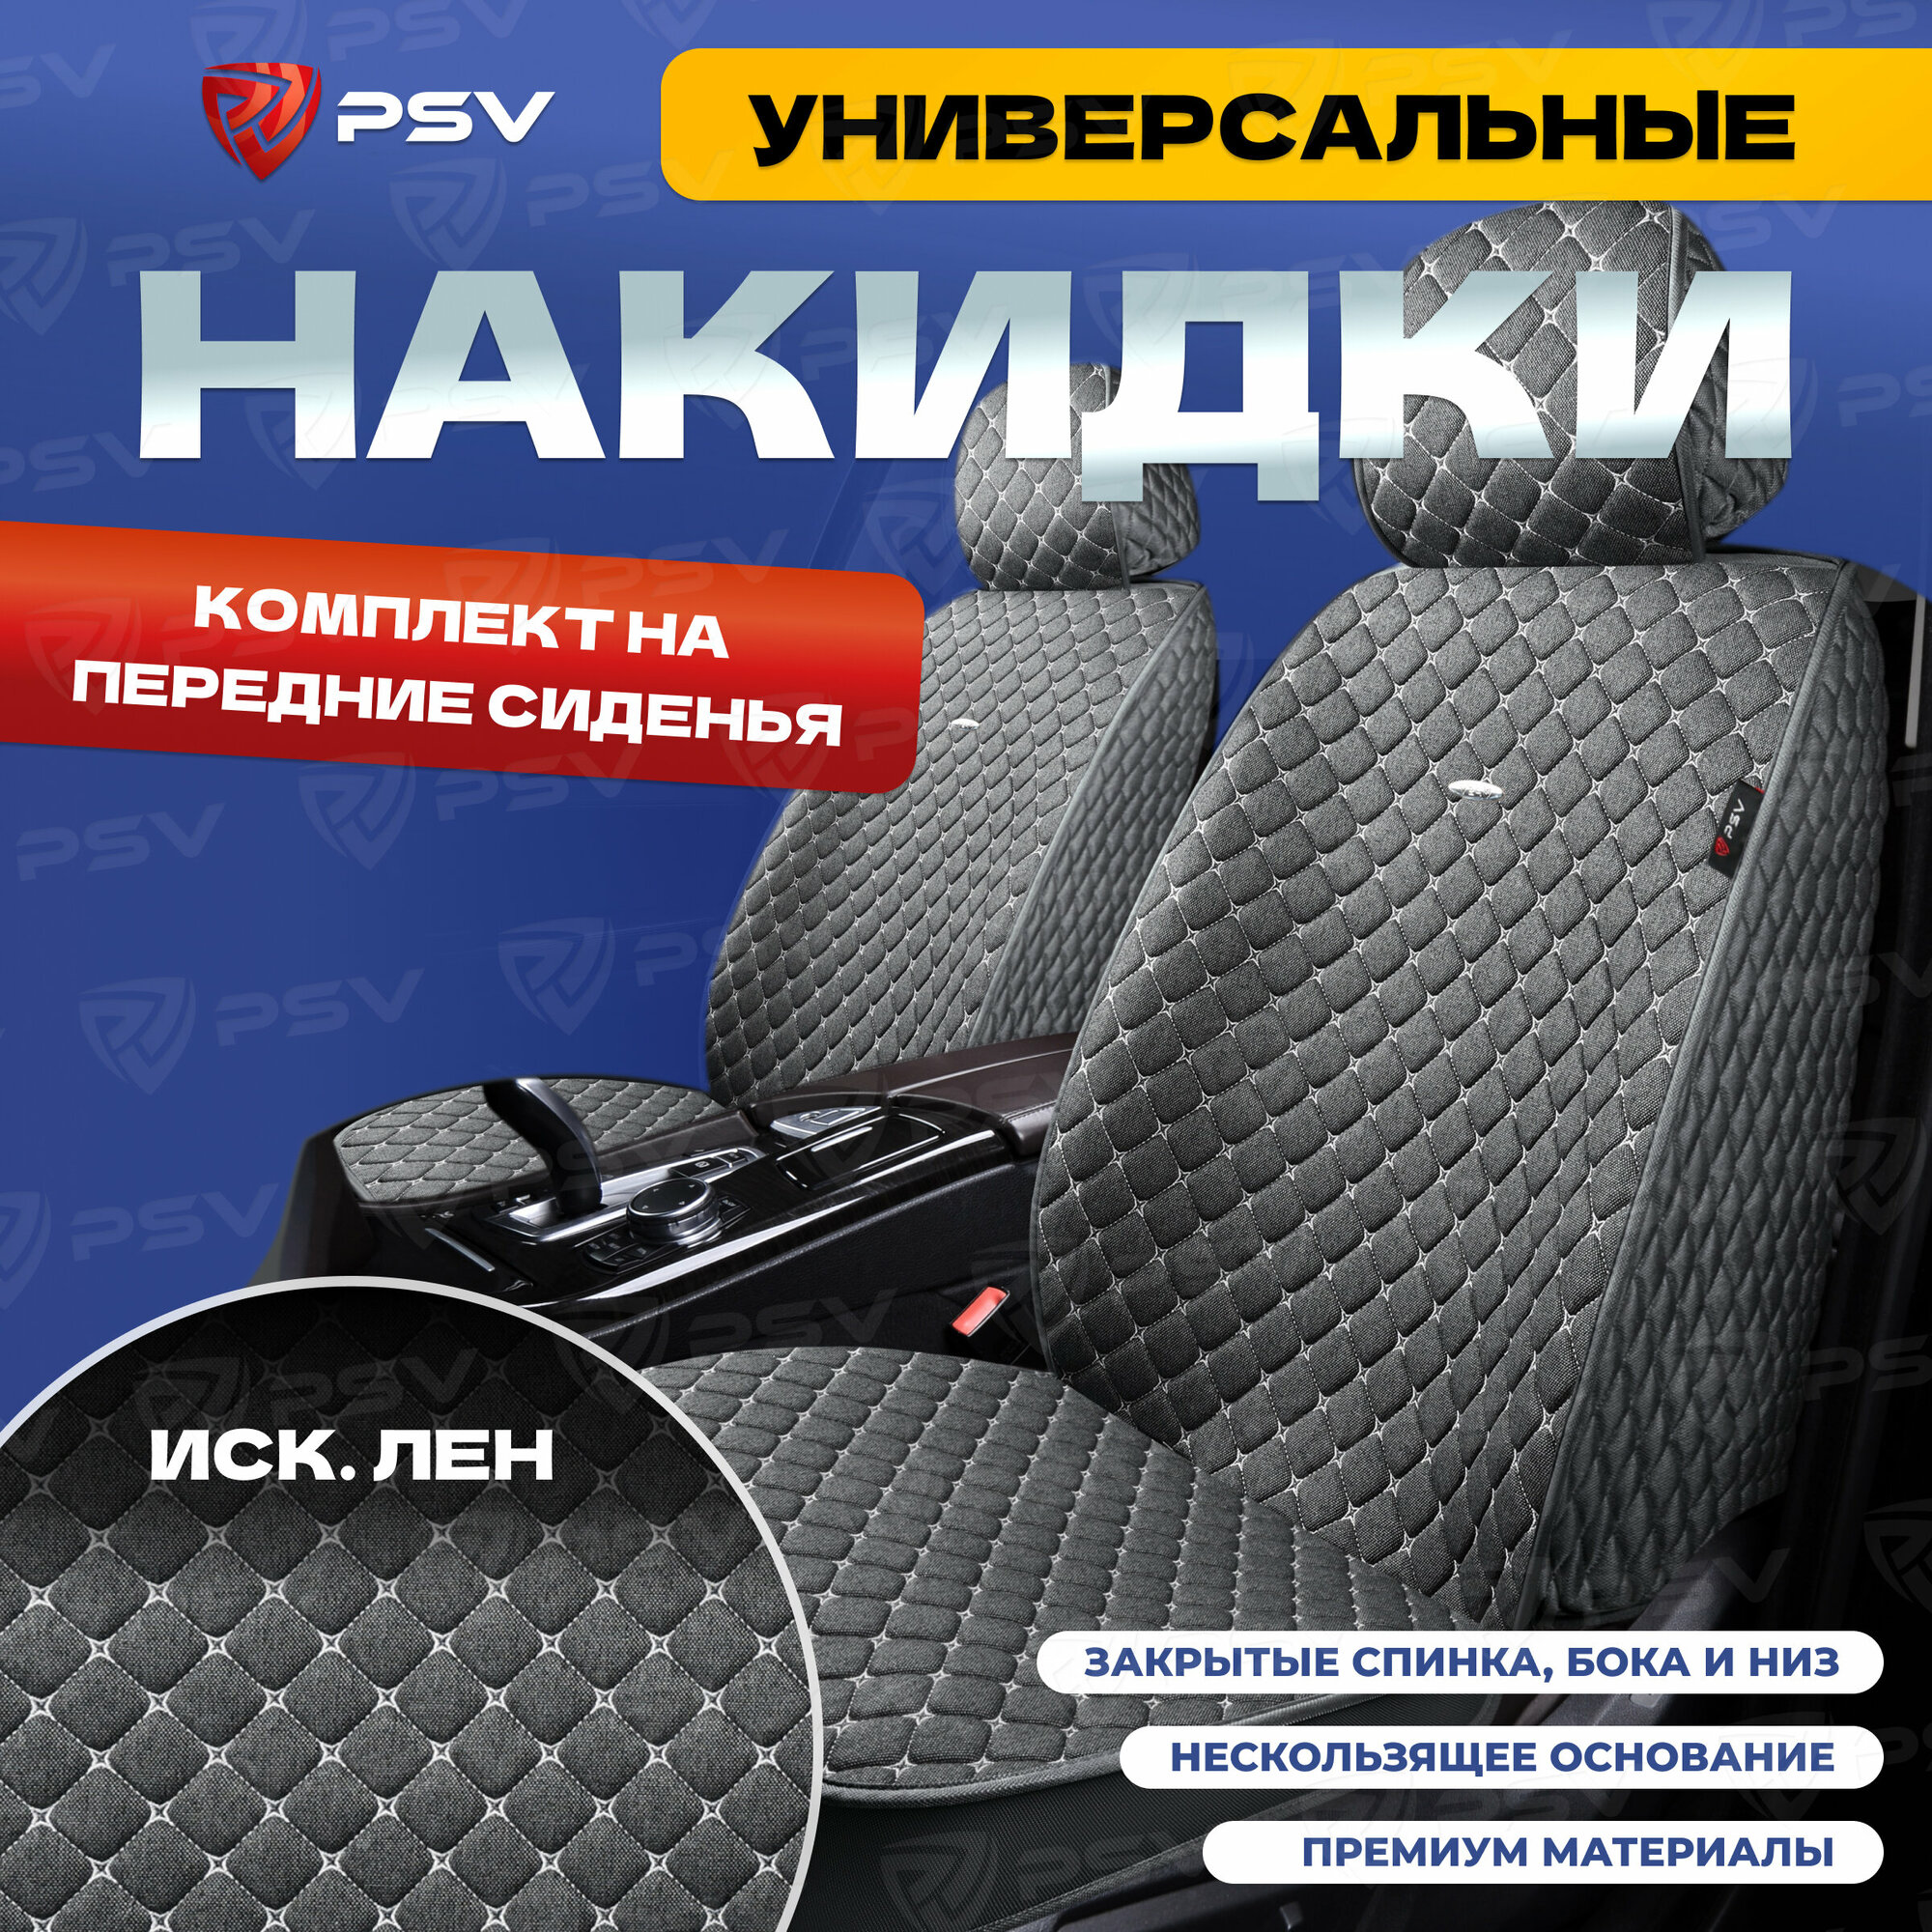 Накидки на сиденья универсальные 5D PSV Len 2 FRONT (Серый, Отстрочка Белая), на передние сиденья, лен